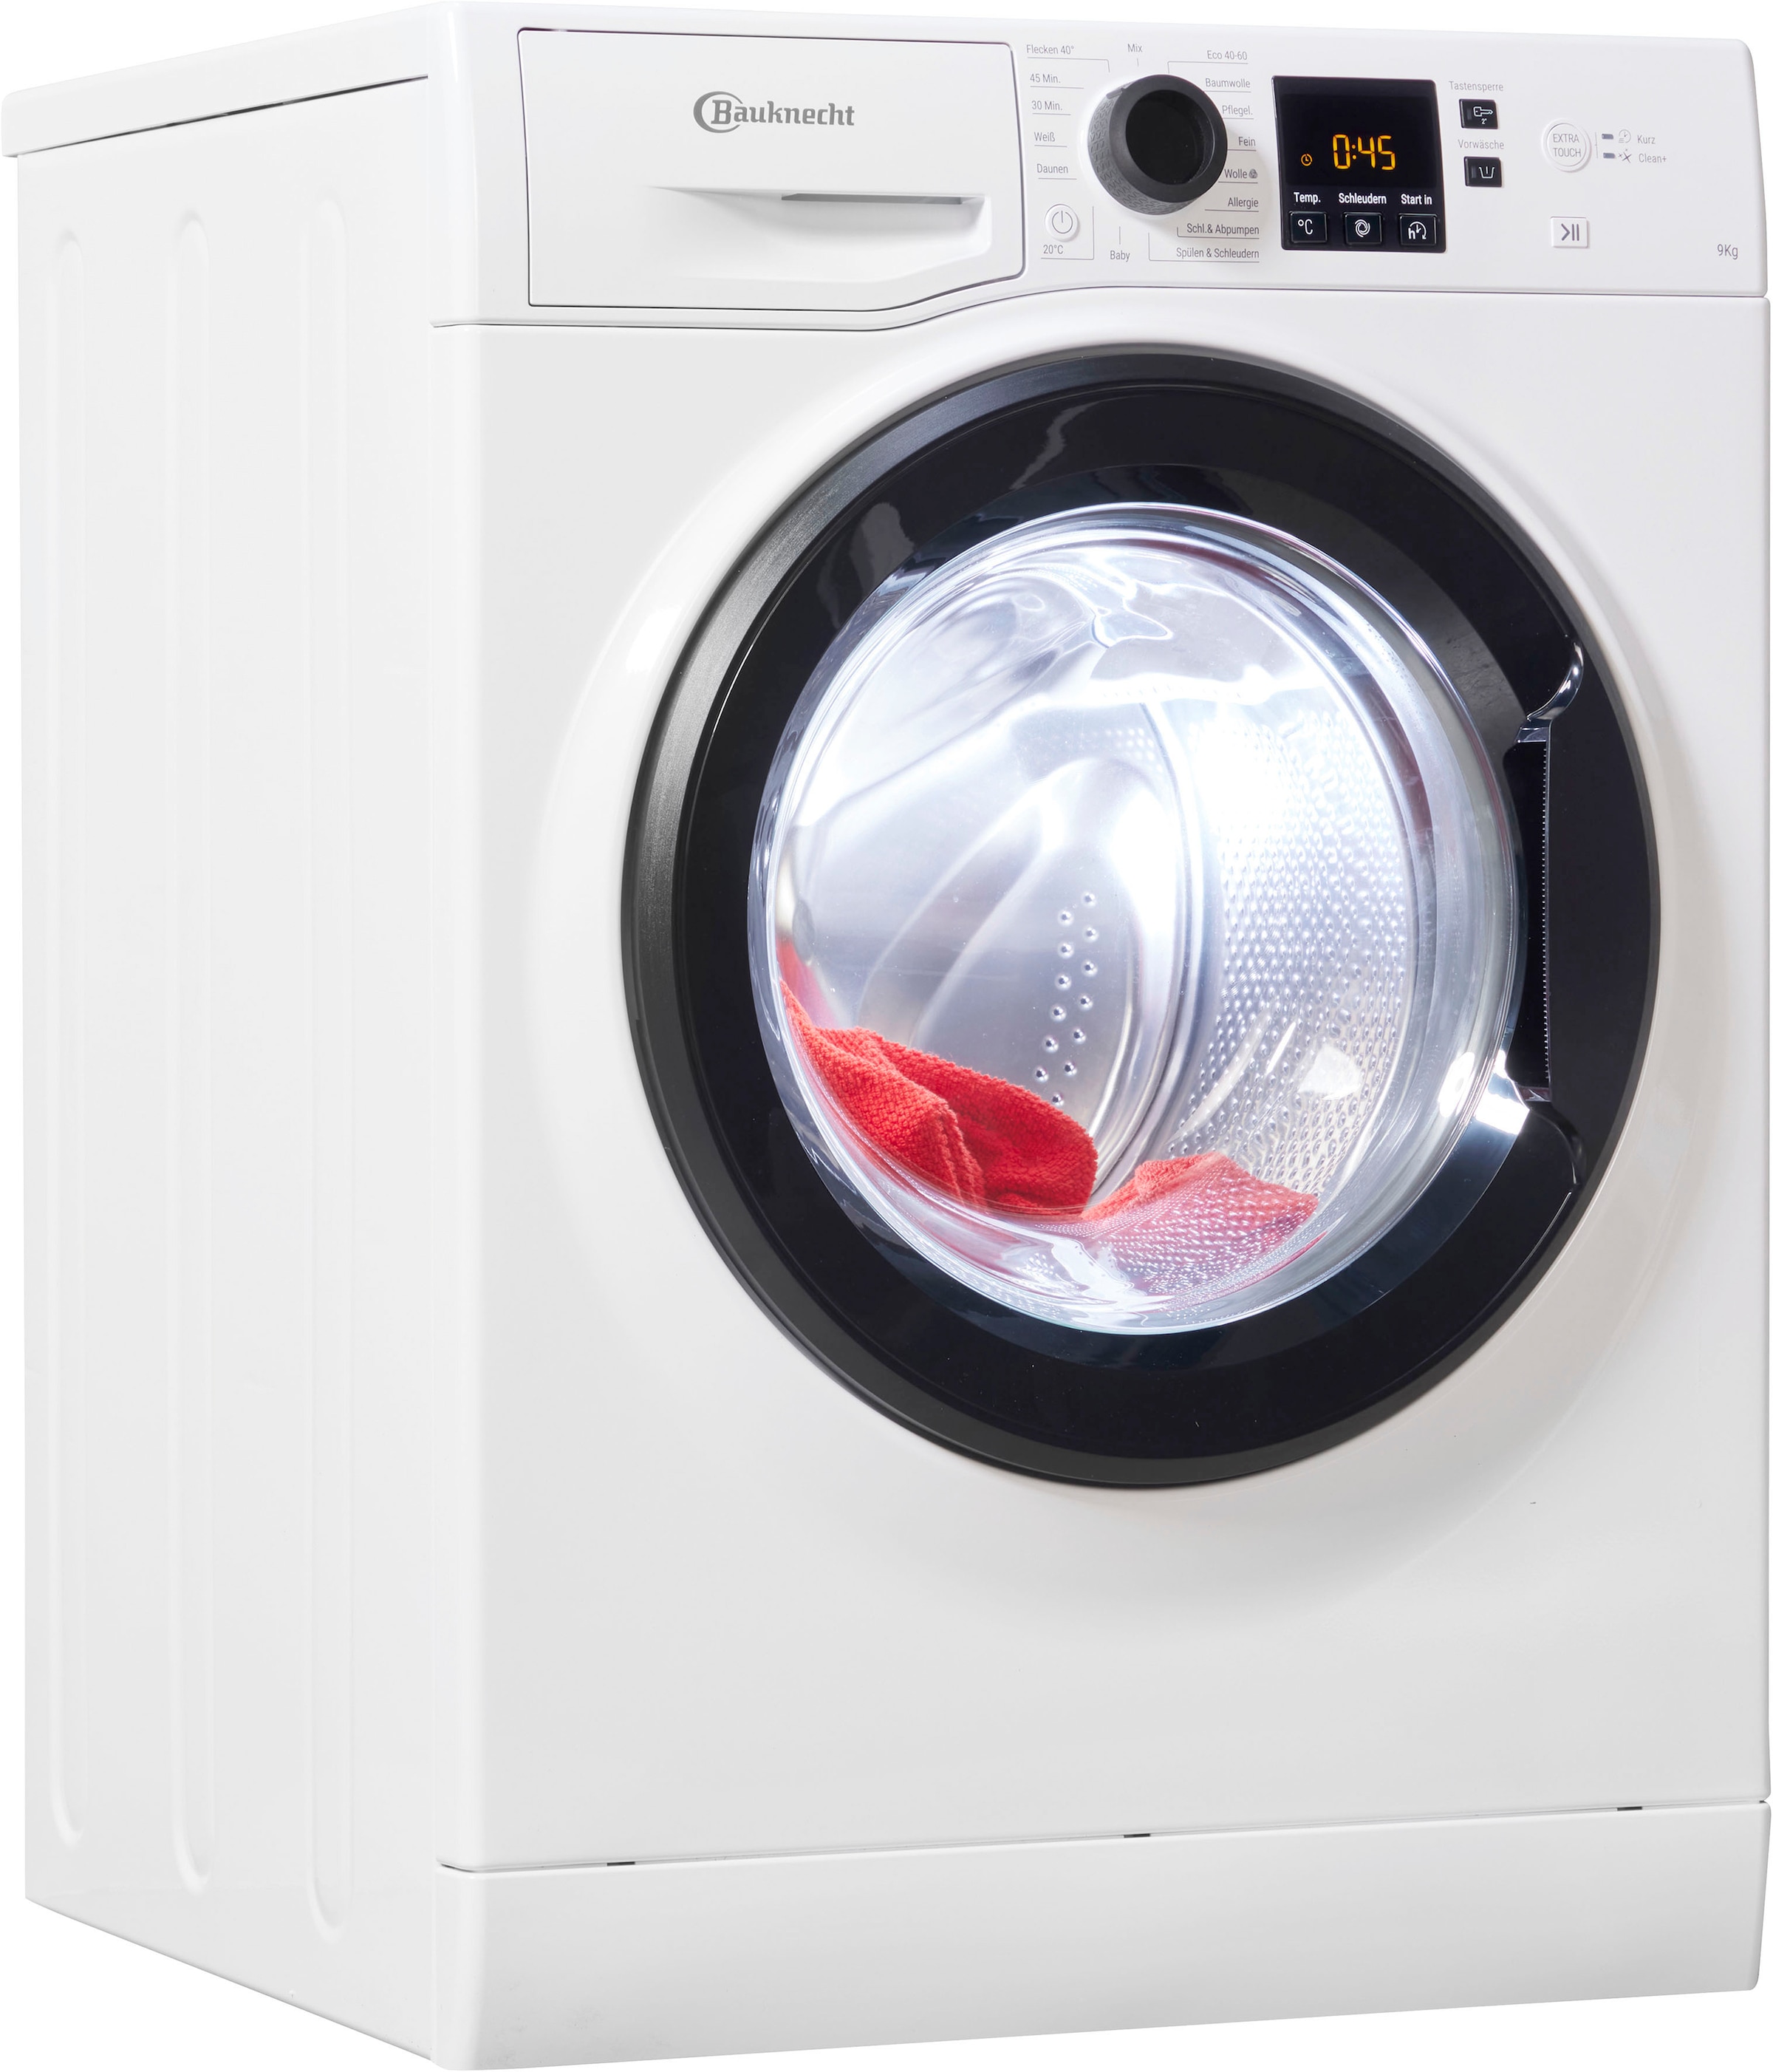 Bauknecht Waschmaschinen jetzt hat bestellen ▻ Teilzahlung sein Jeder auf Universal